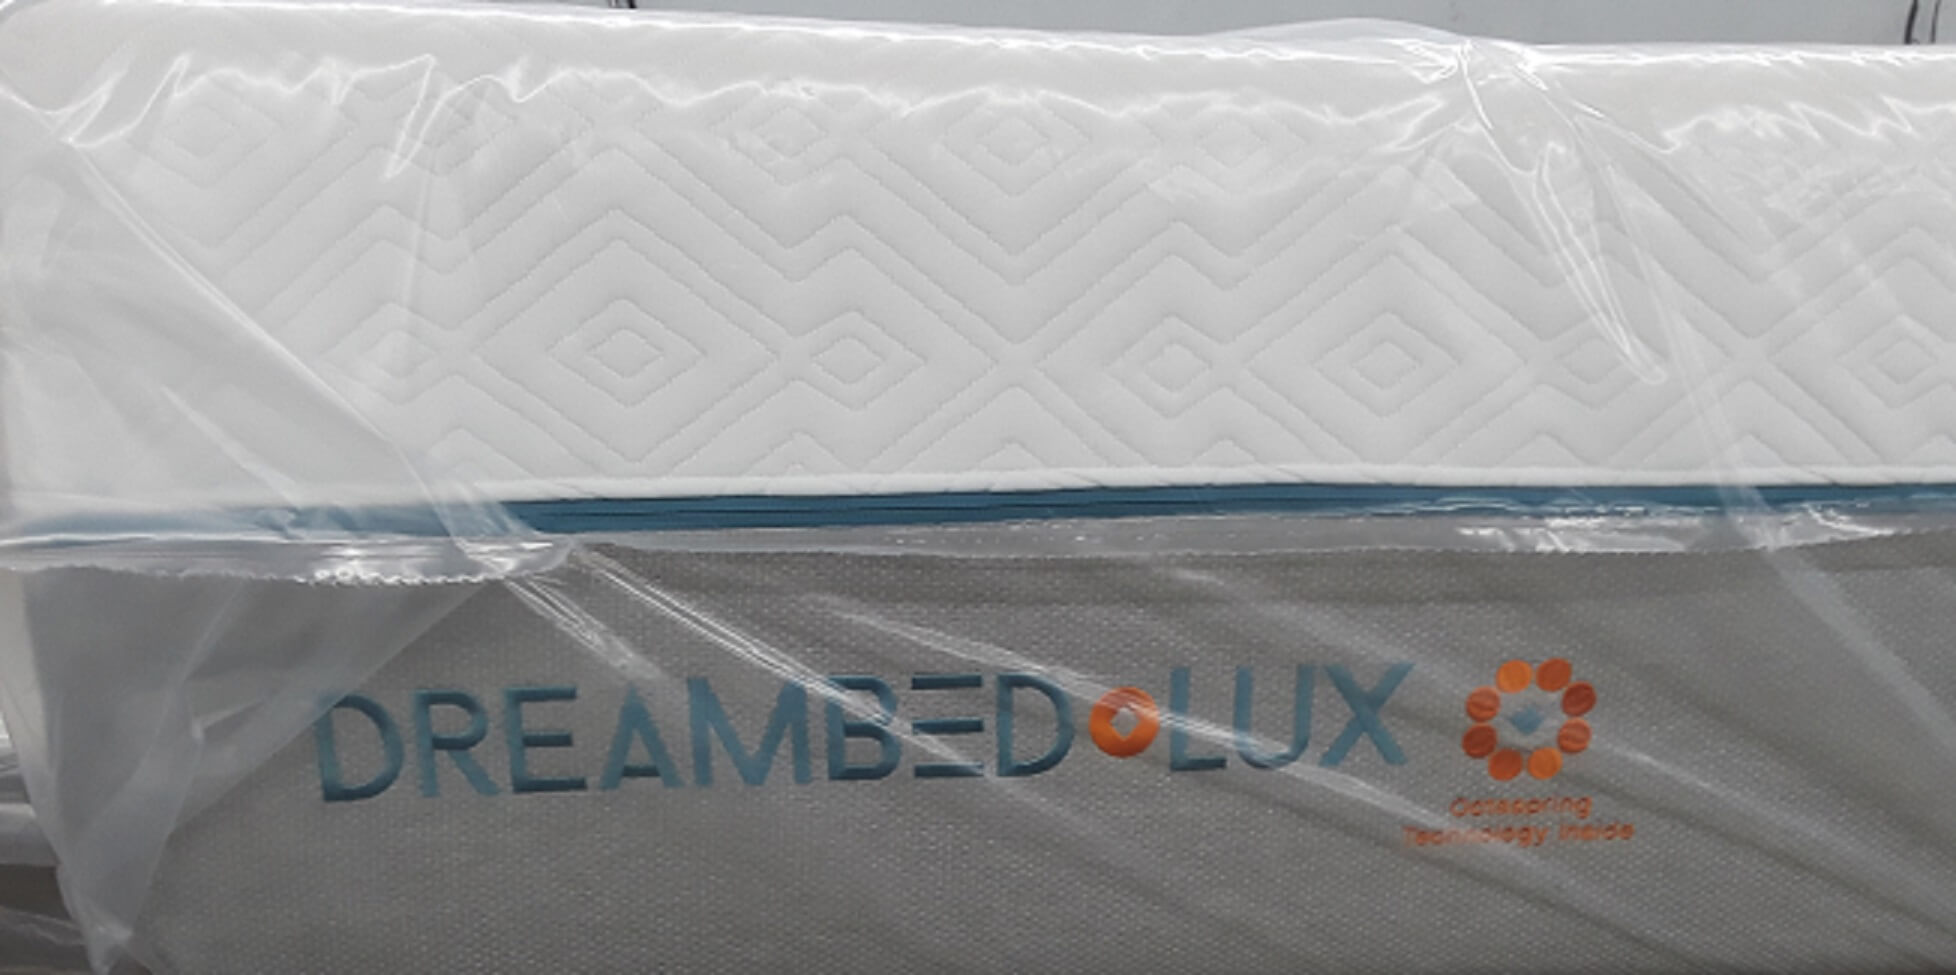 dream bed lux lx 670 mattress